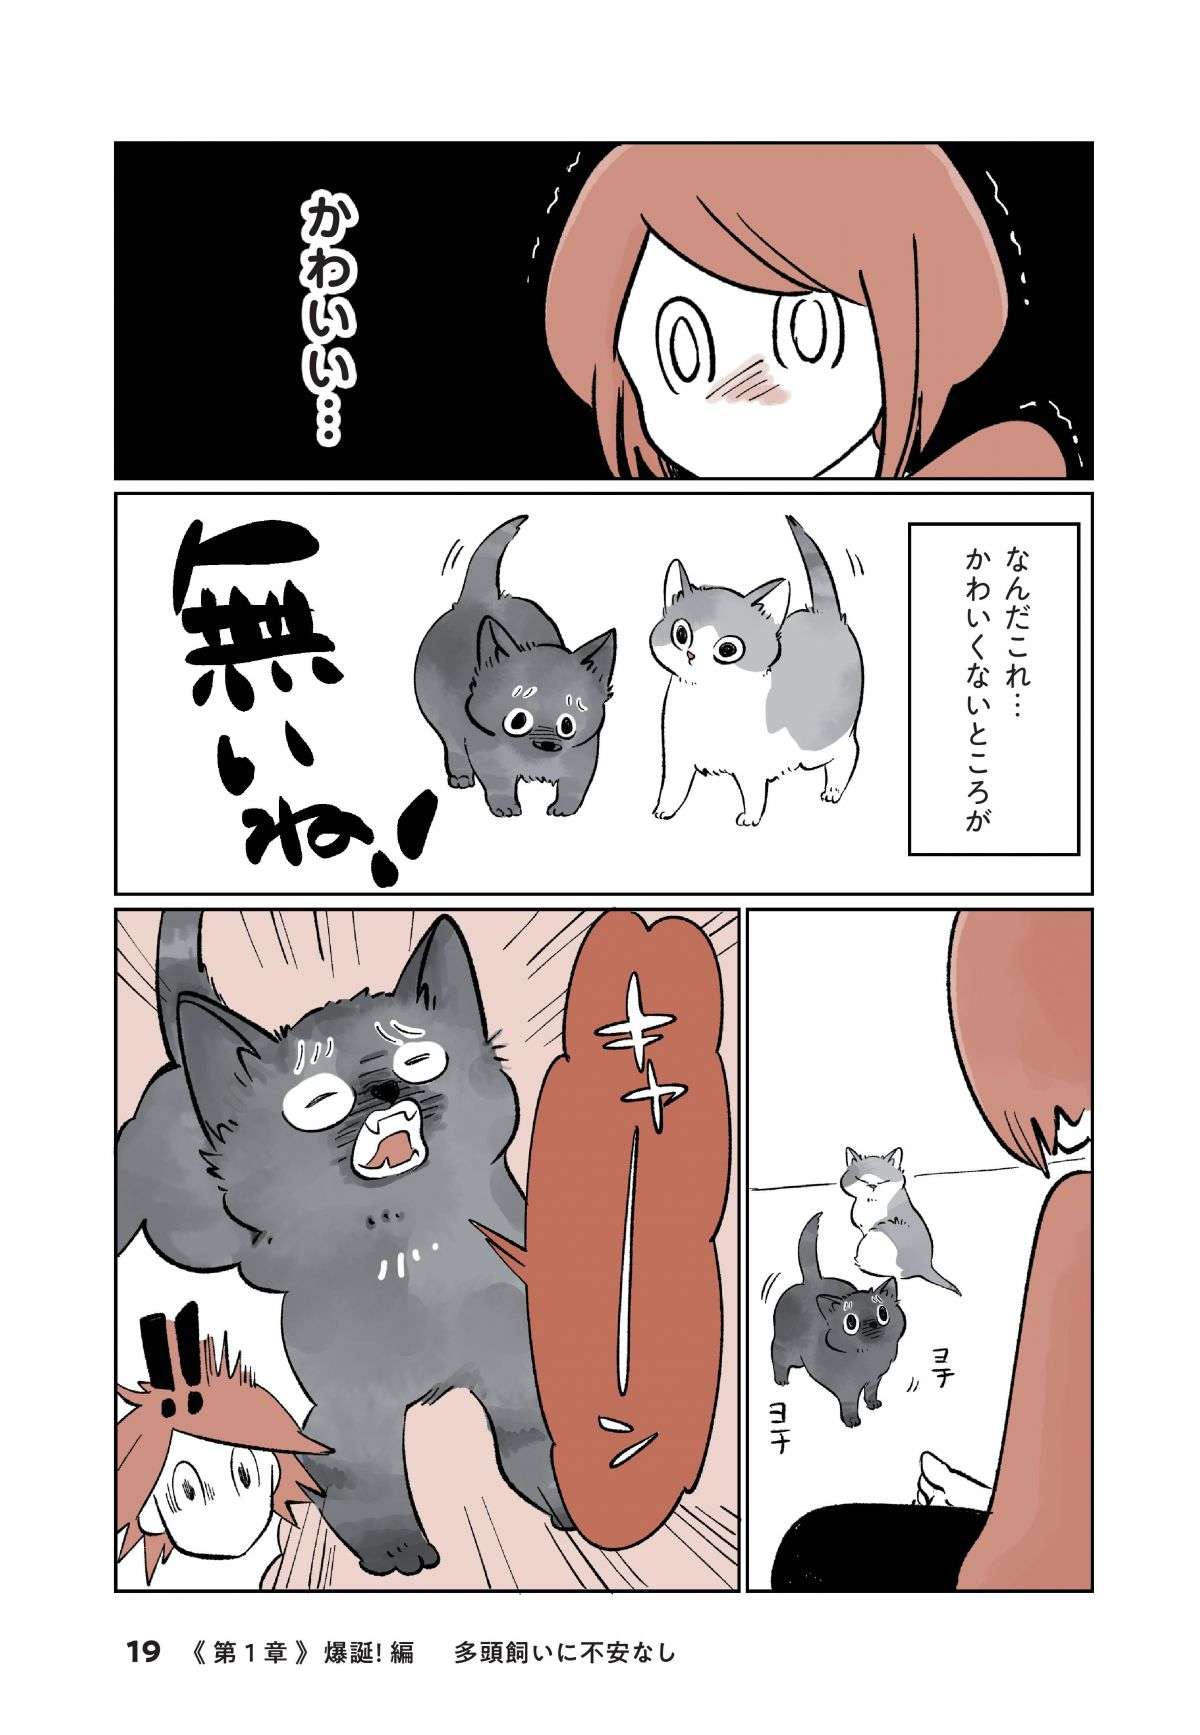 「ちまっ」ヨチヨチ歩く2匹の子猫が我が家に！  不安も吹き飛ぶ「衝撃のかわいさ」／こねこのドレイ koneko_dorei2-4.jpg